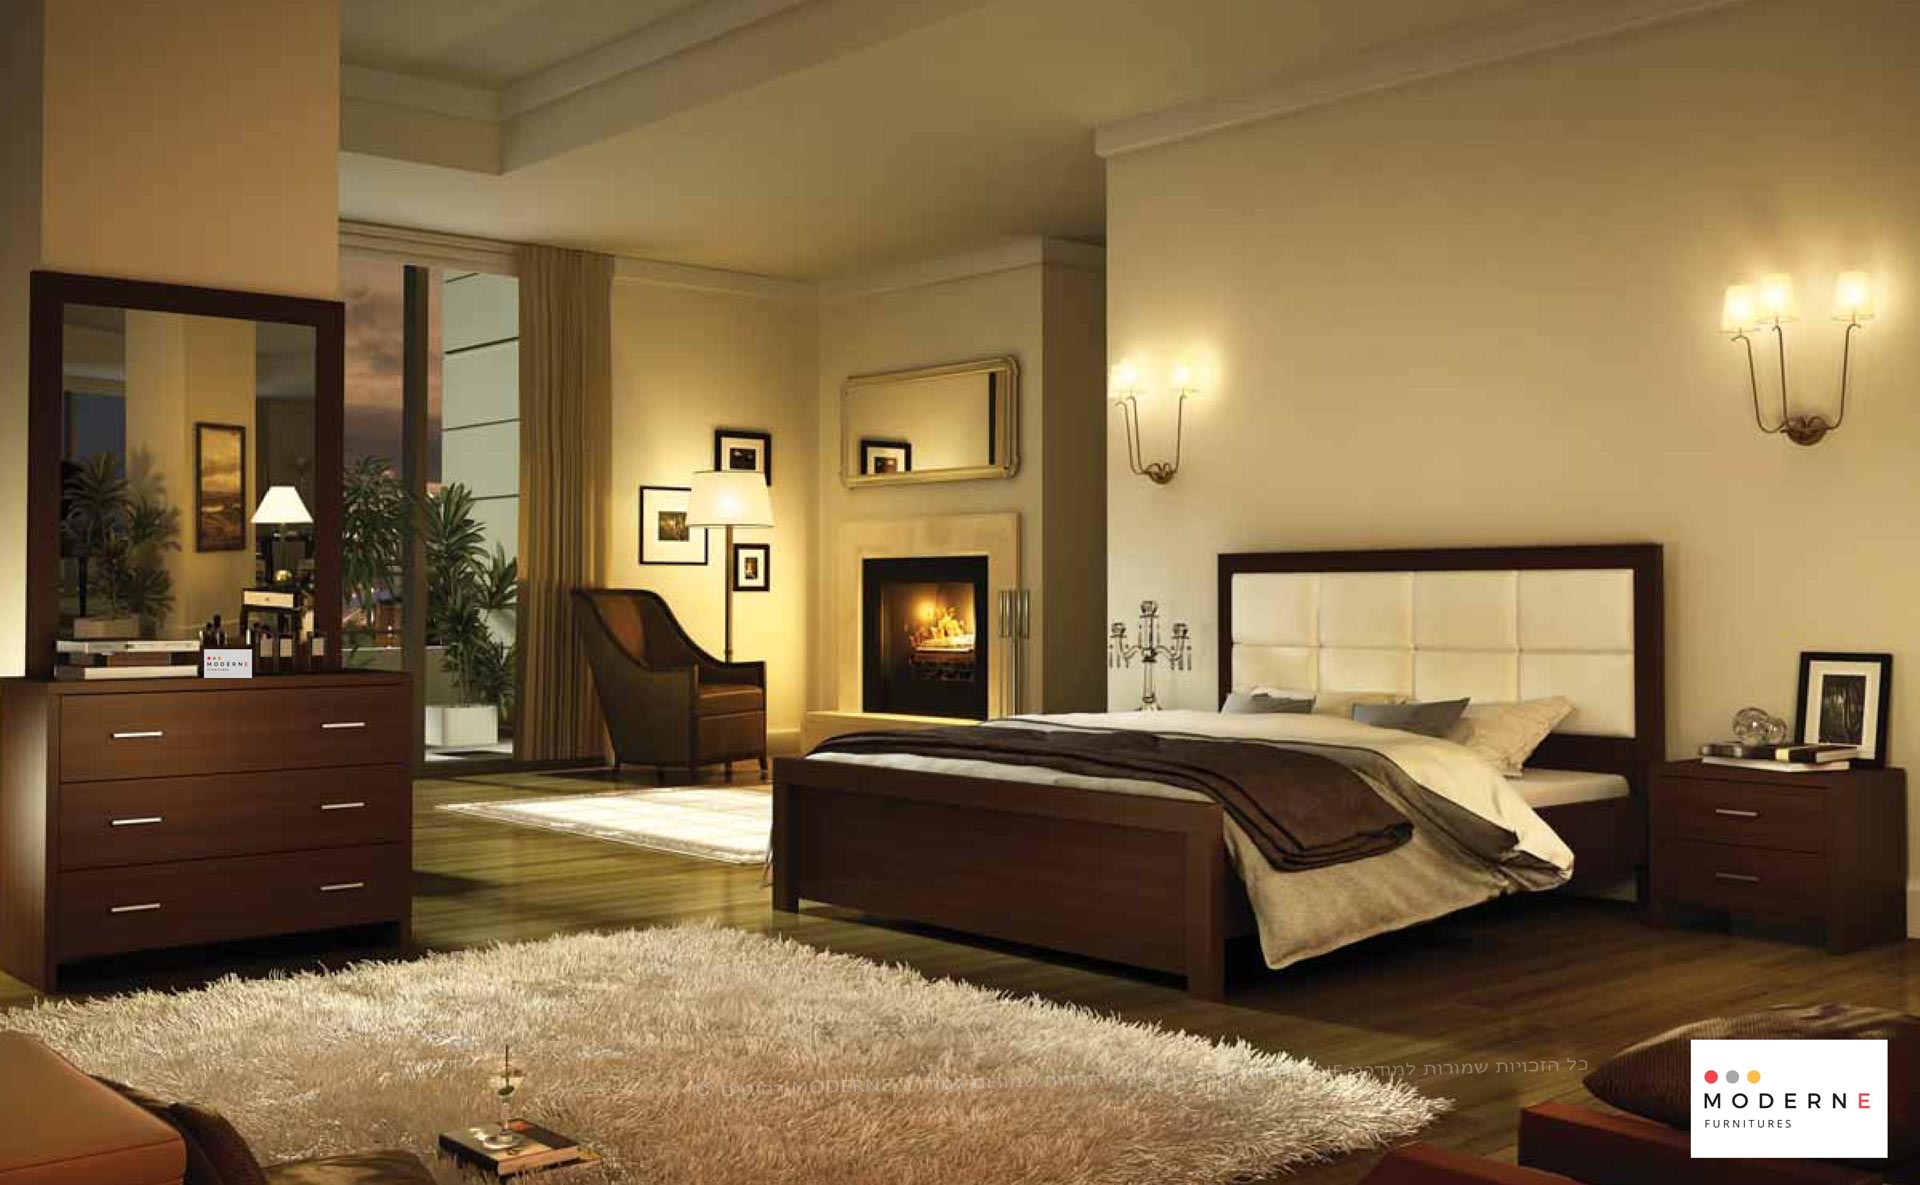 חדר שינה קומפלט דגם דאלאס הכולל מיטה זוגית ,שידות ,קומודה ,מראה ,נמצא באתר מודרני moderne.co.il